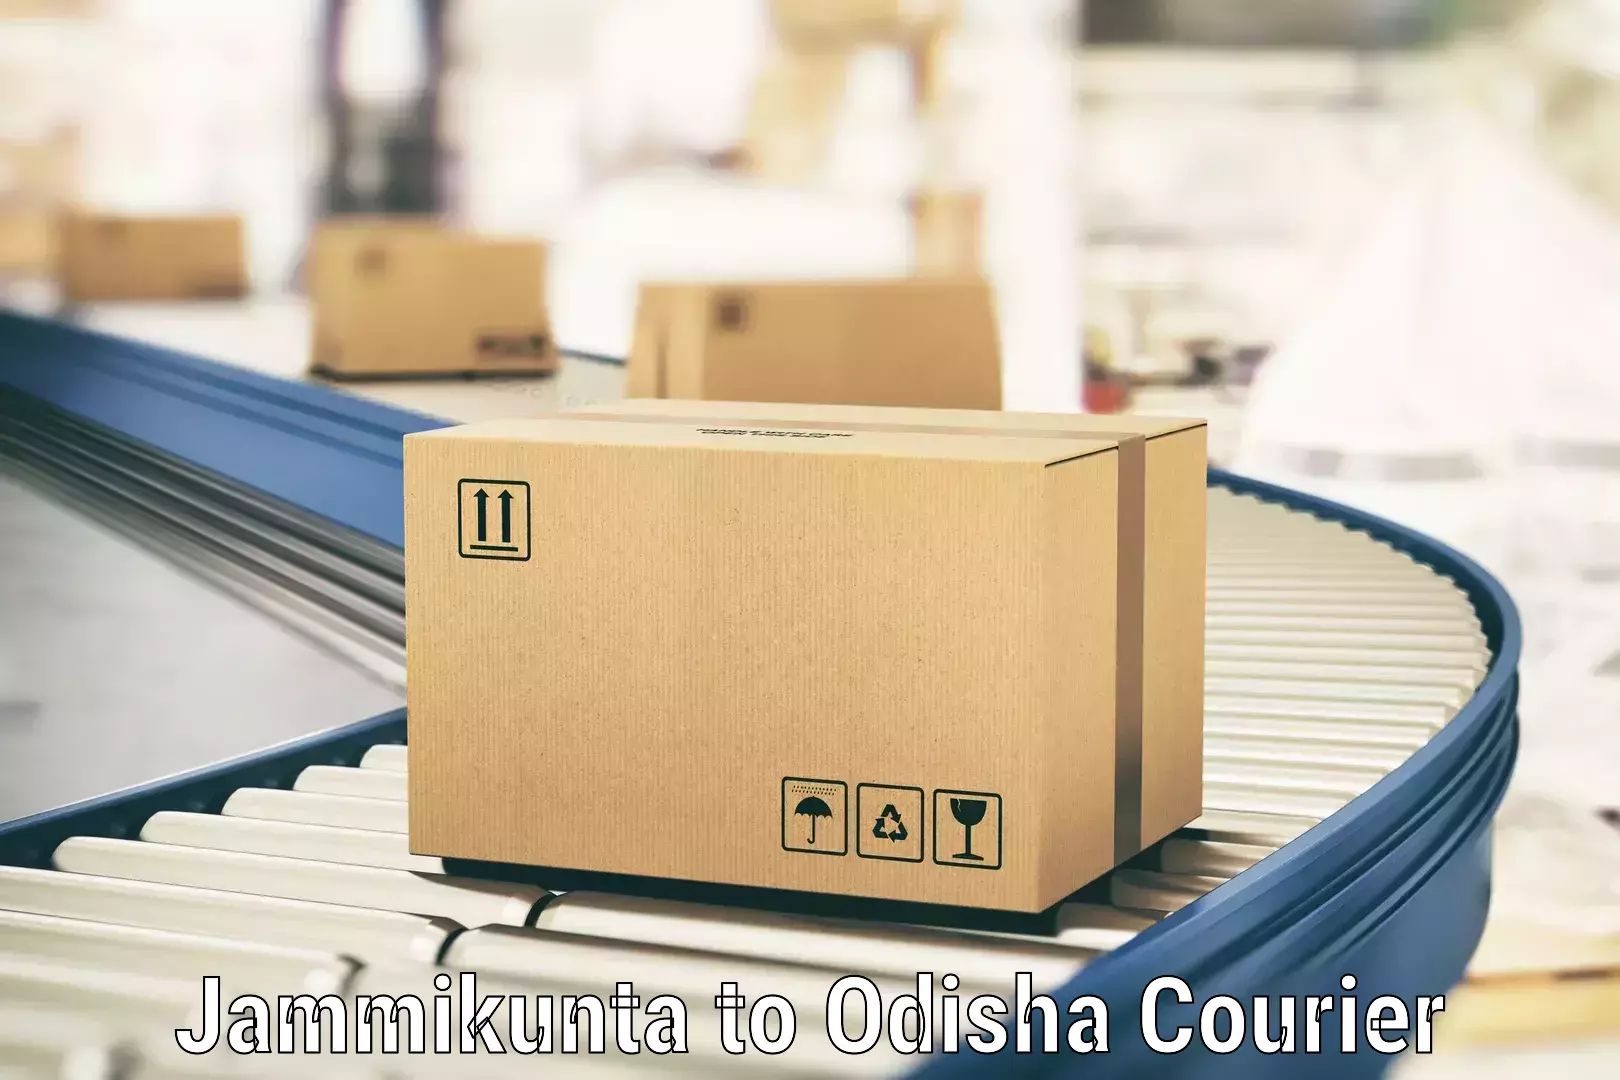 Cost-effective courier options Jammikunta to Muniguda